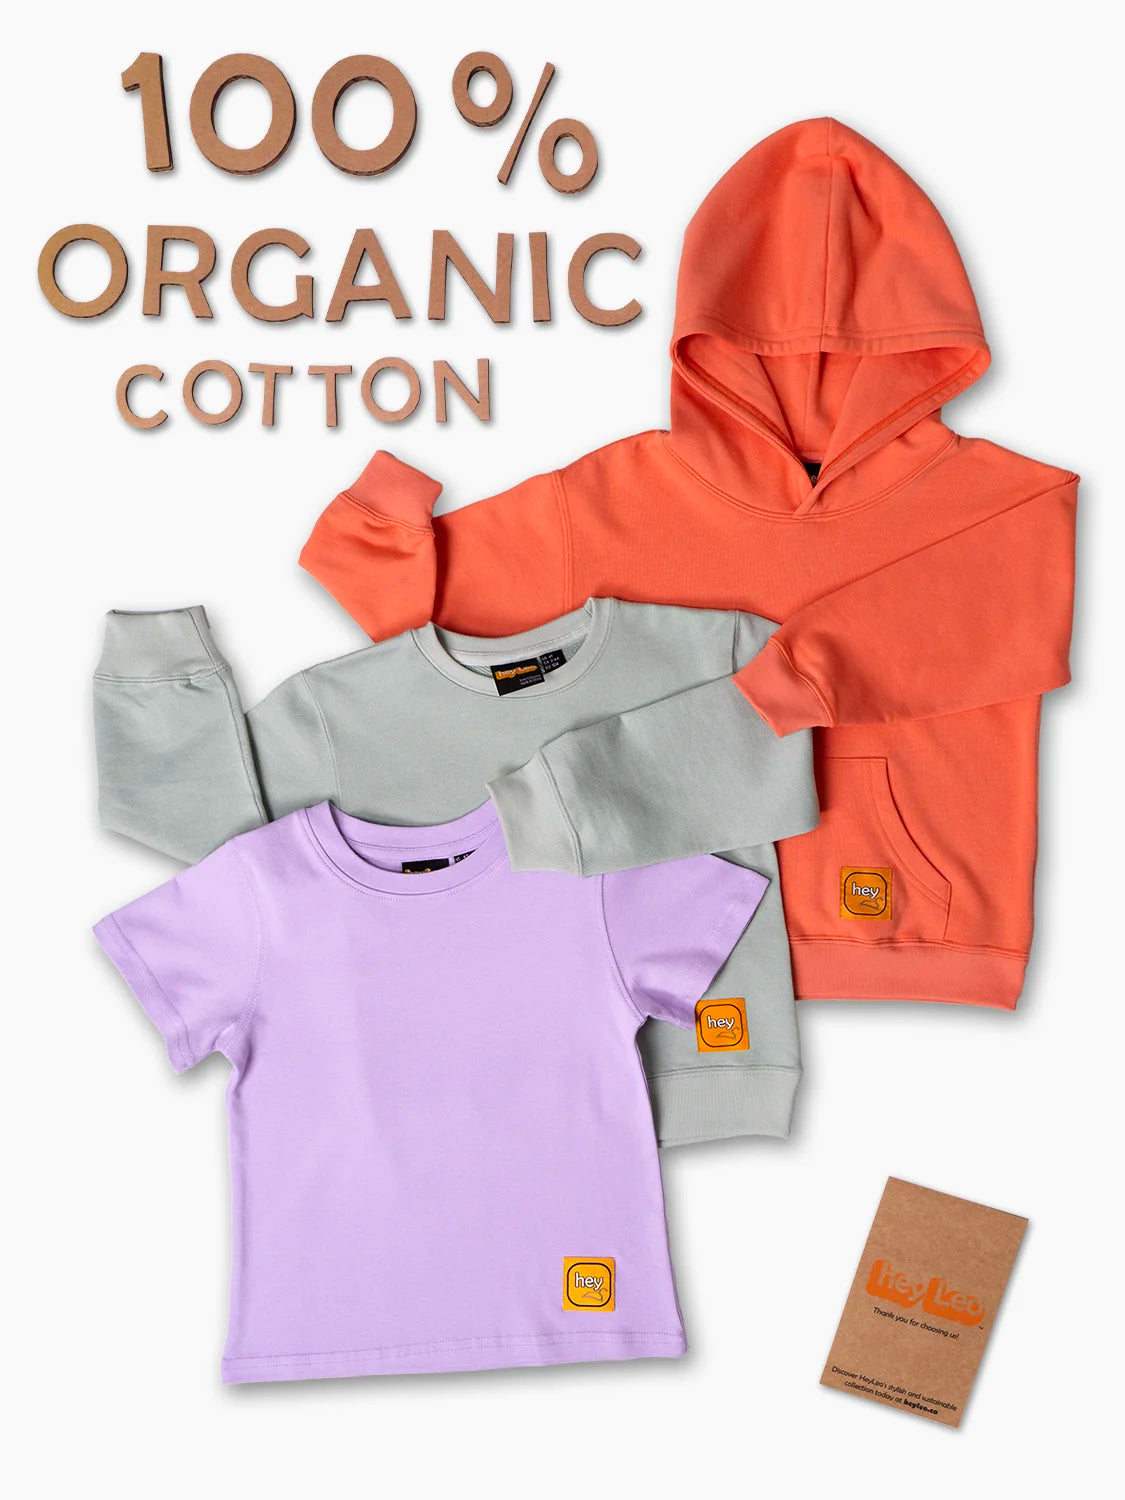 100% Organic Cotton 3-piece Outfit Set Bright Orange/Pastel Colors